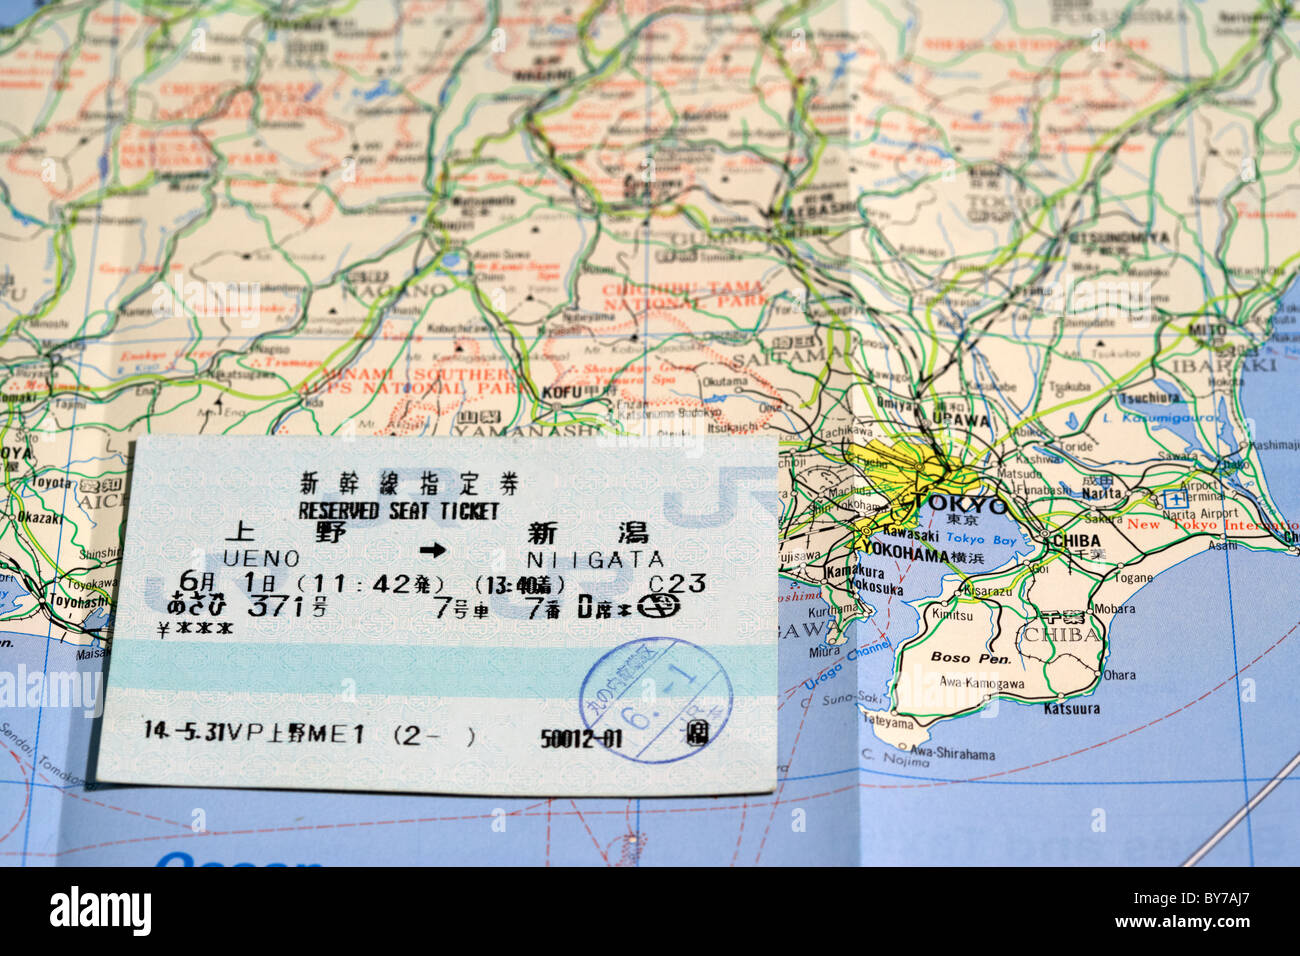 Siège réservé japonais billet et carte touristique du Japon montrant tokyo Banque D'Images